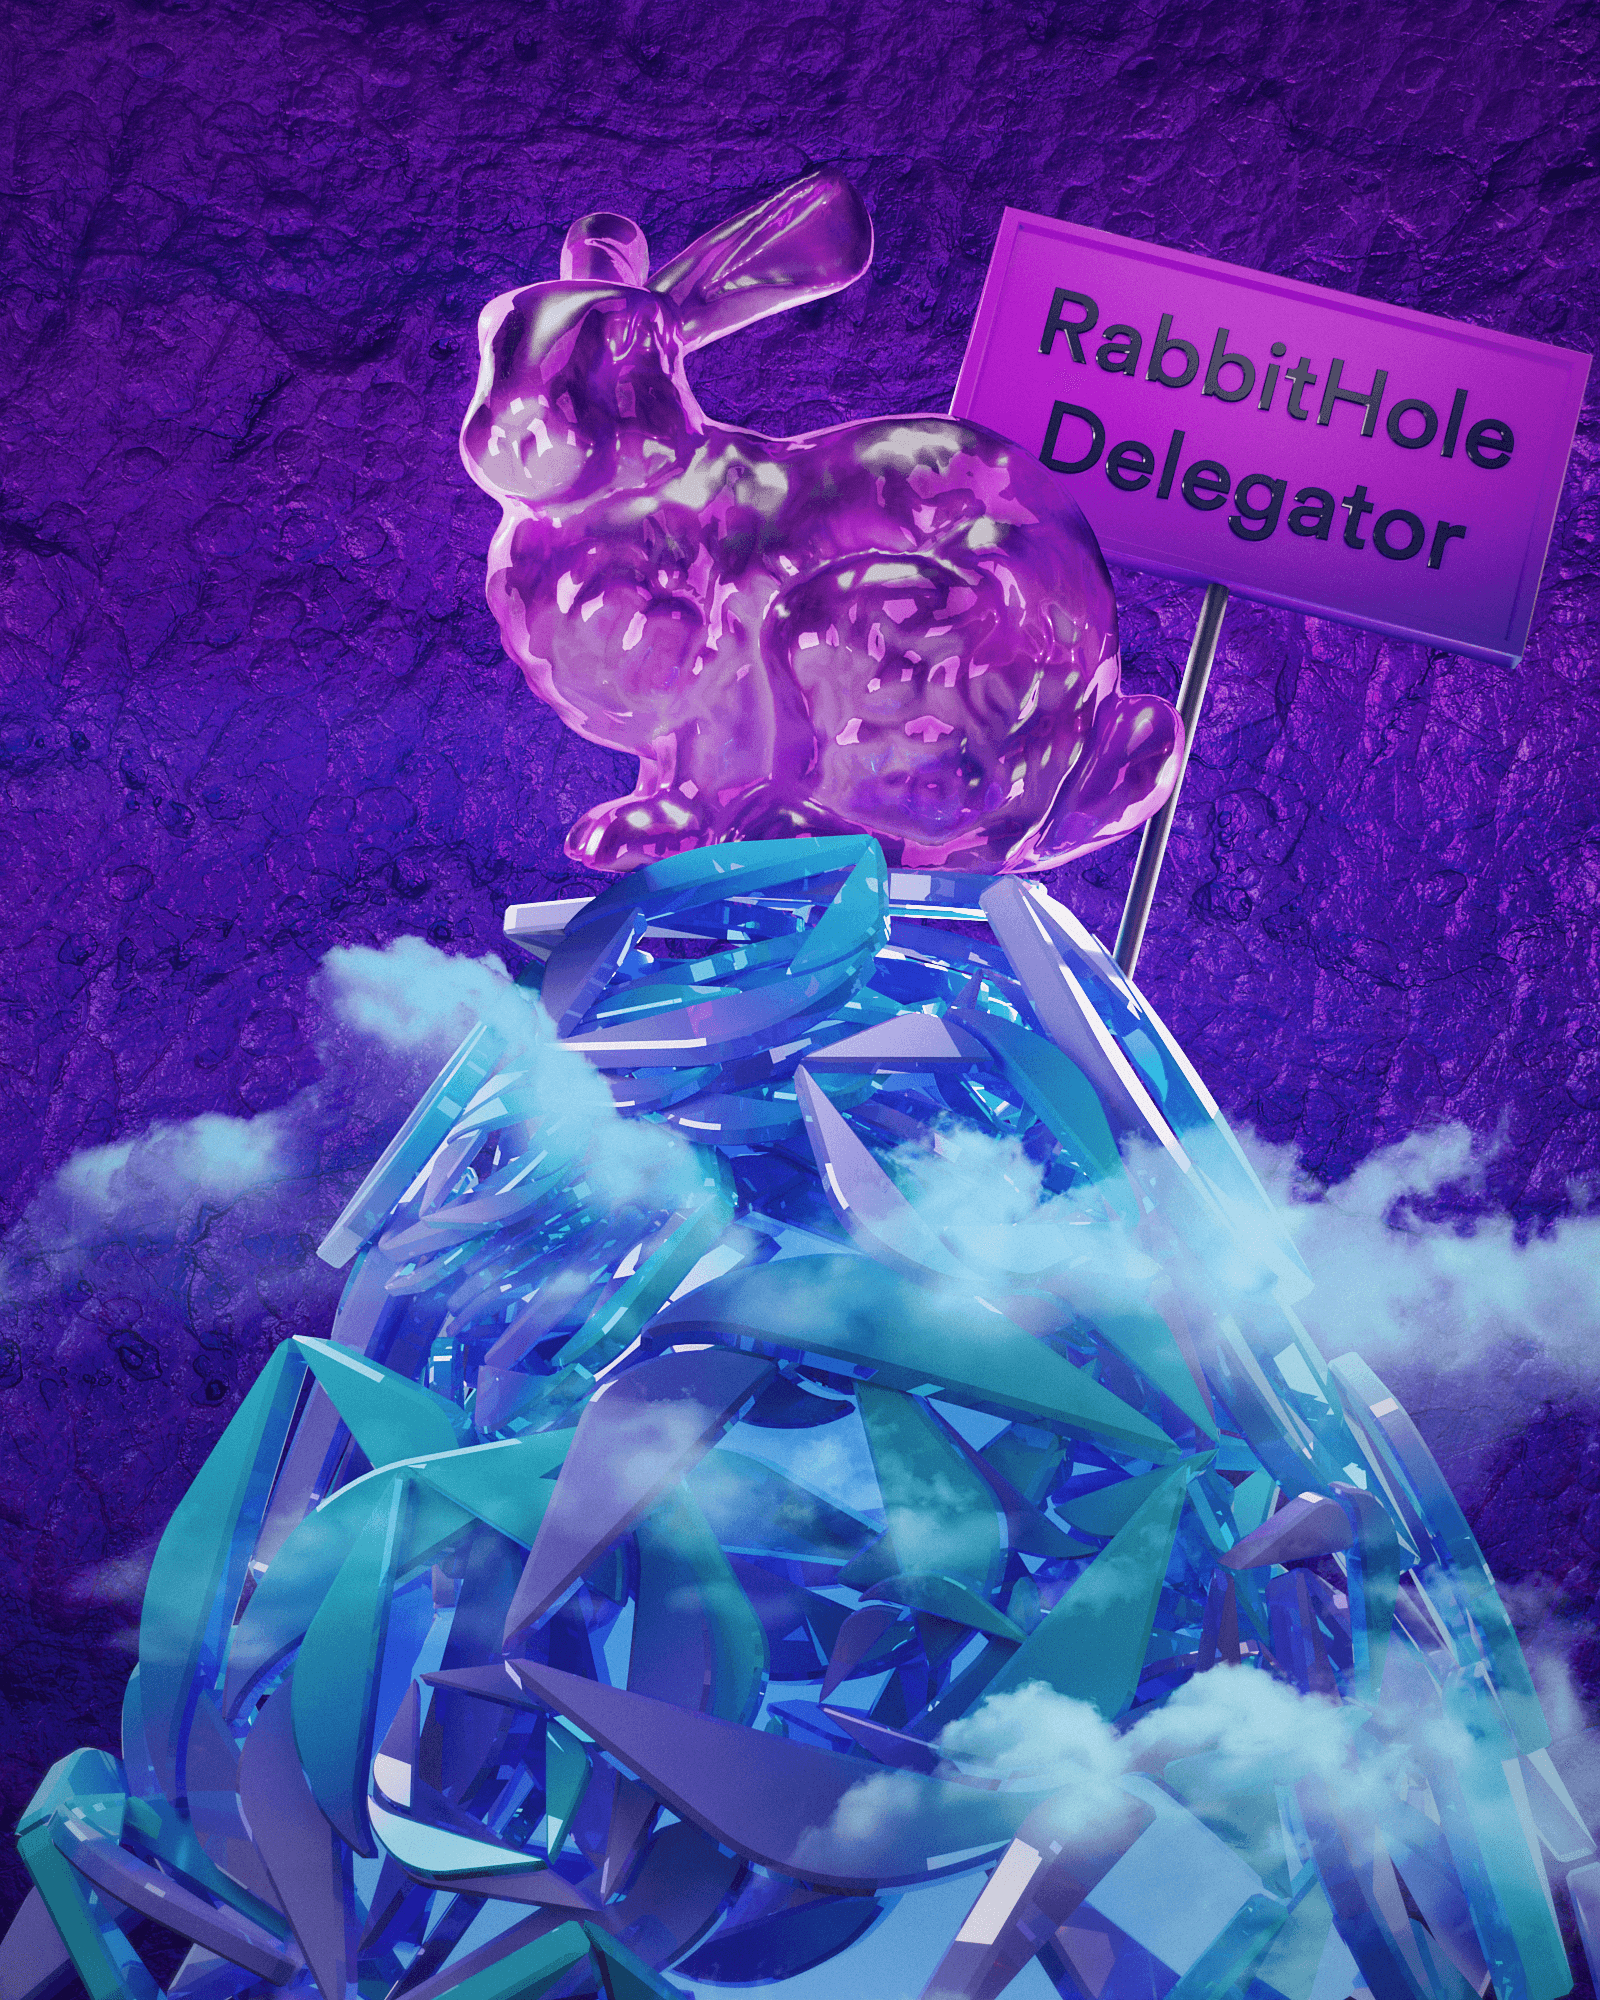 RabbitHole ENS Delegator